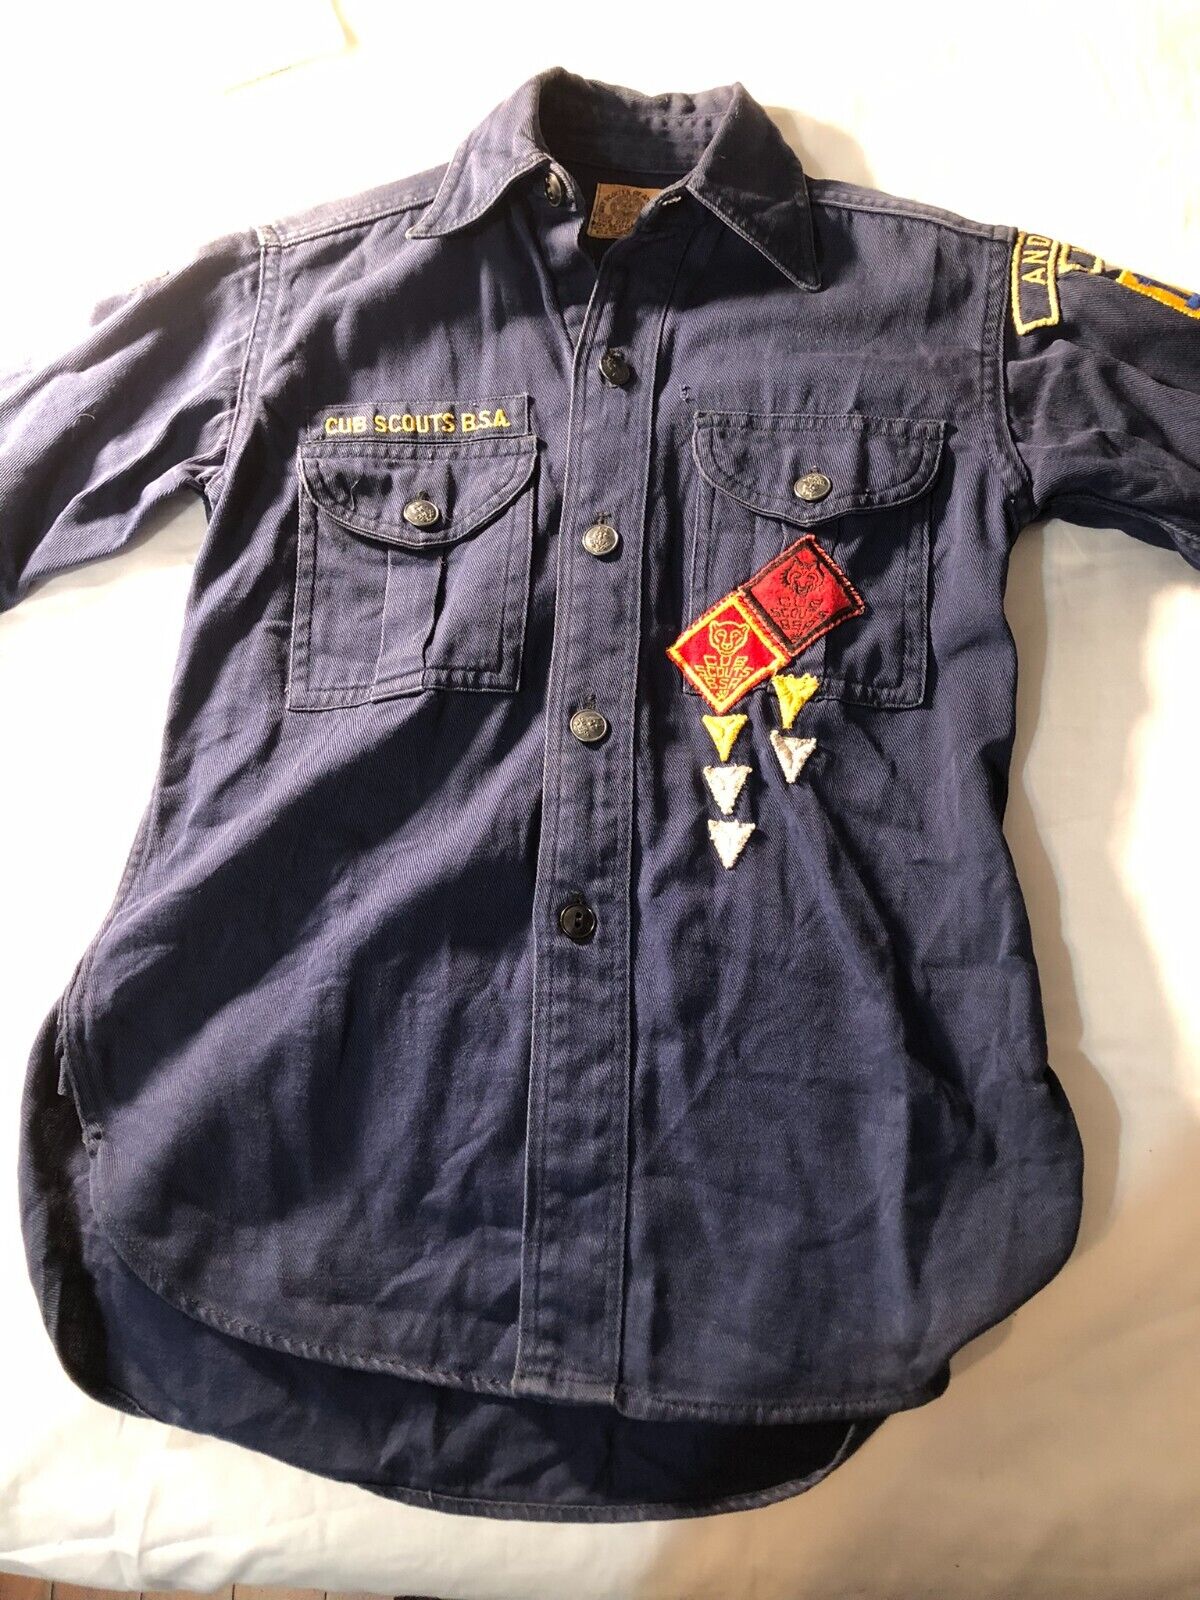 Vintage BSA Cub Scout uniform 1930s or 40's long sleeve badges metal buttons